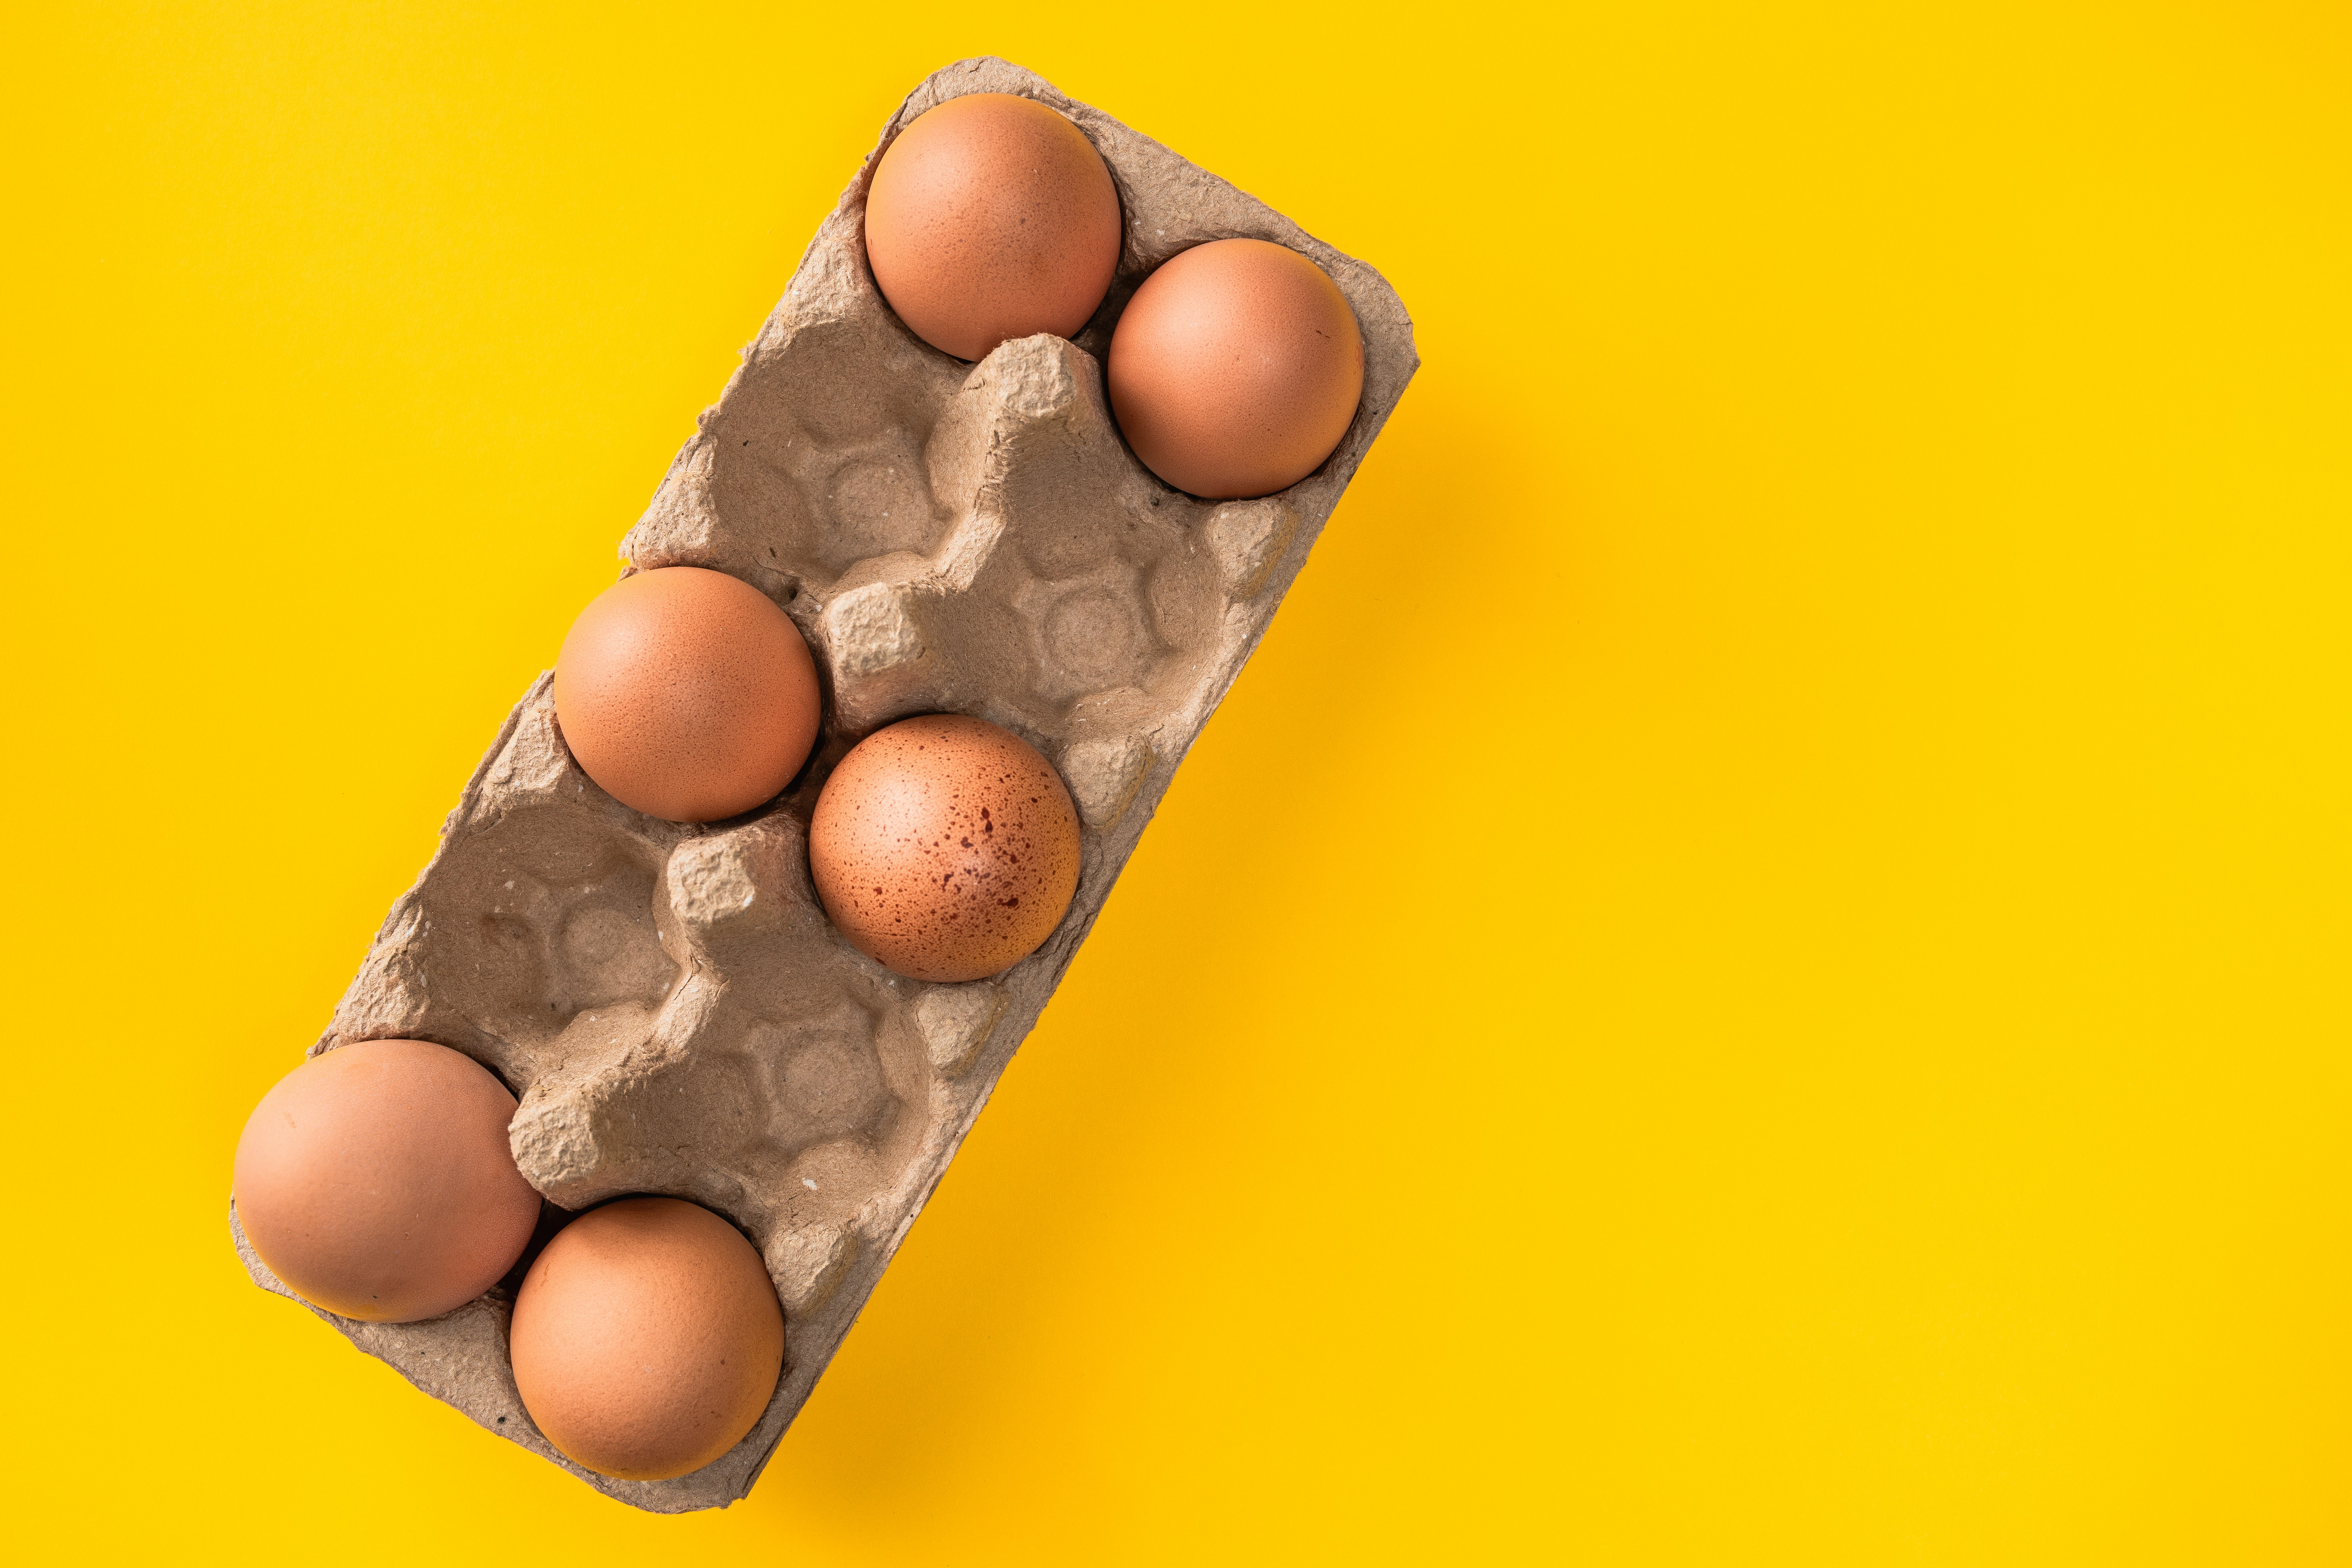 brown egg on gray egg tray